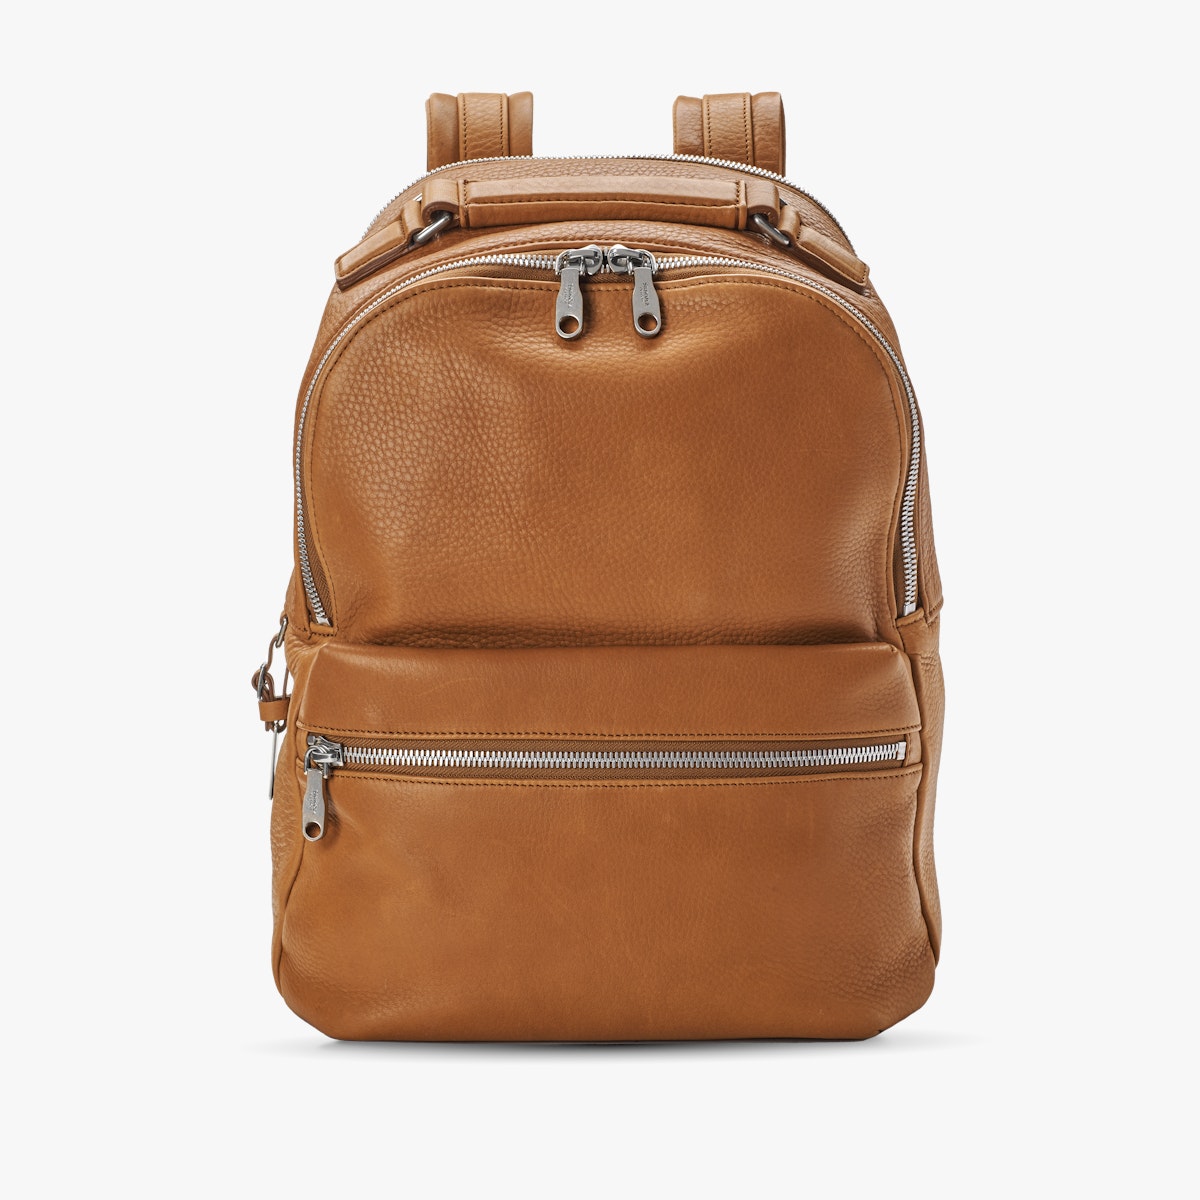 Runwell Backpack, Natural Grain Leather